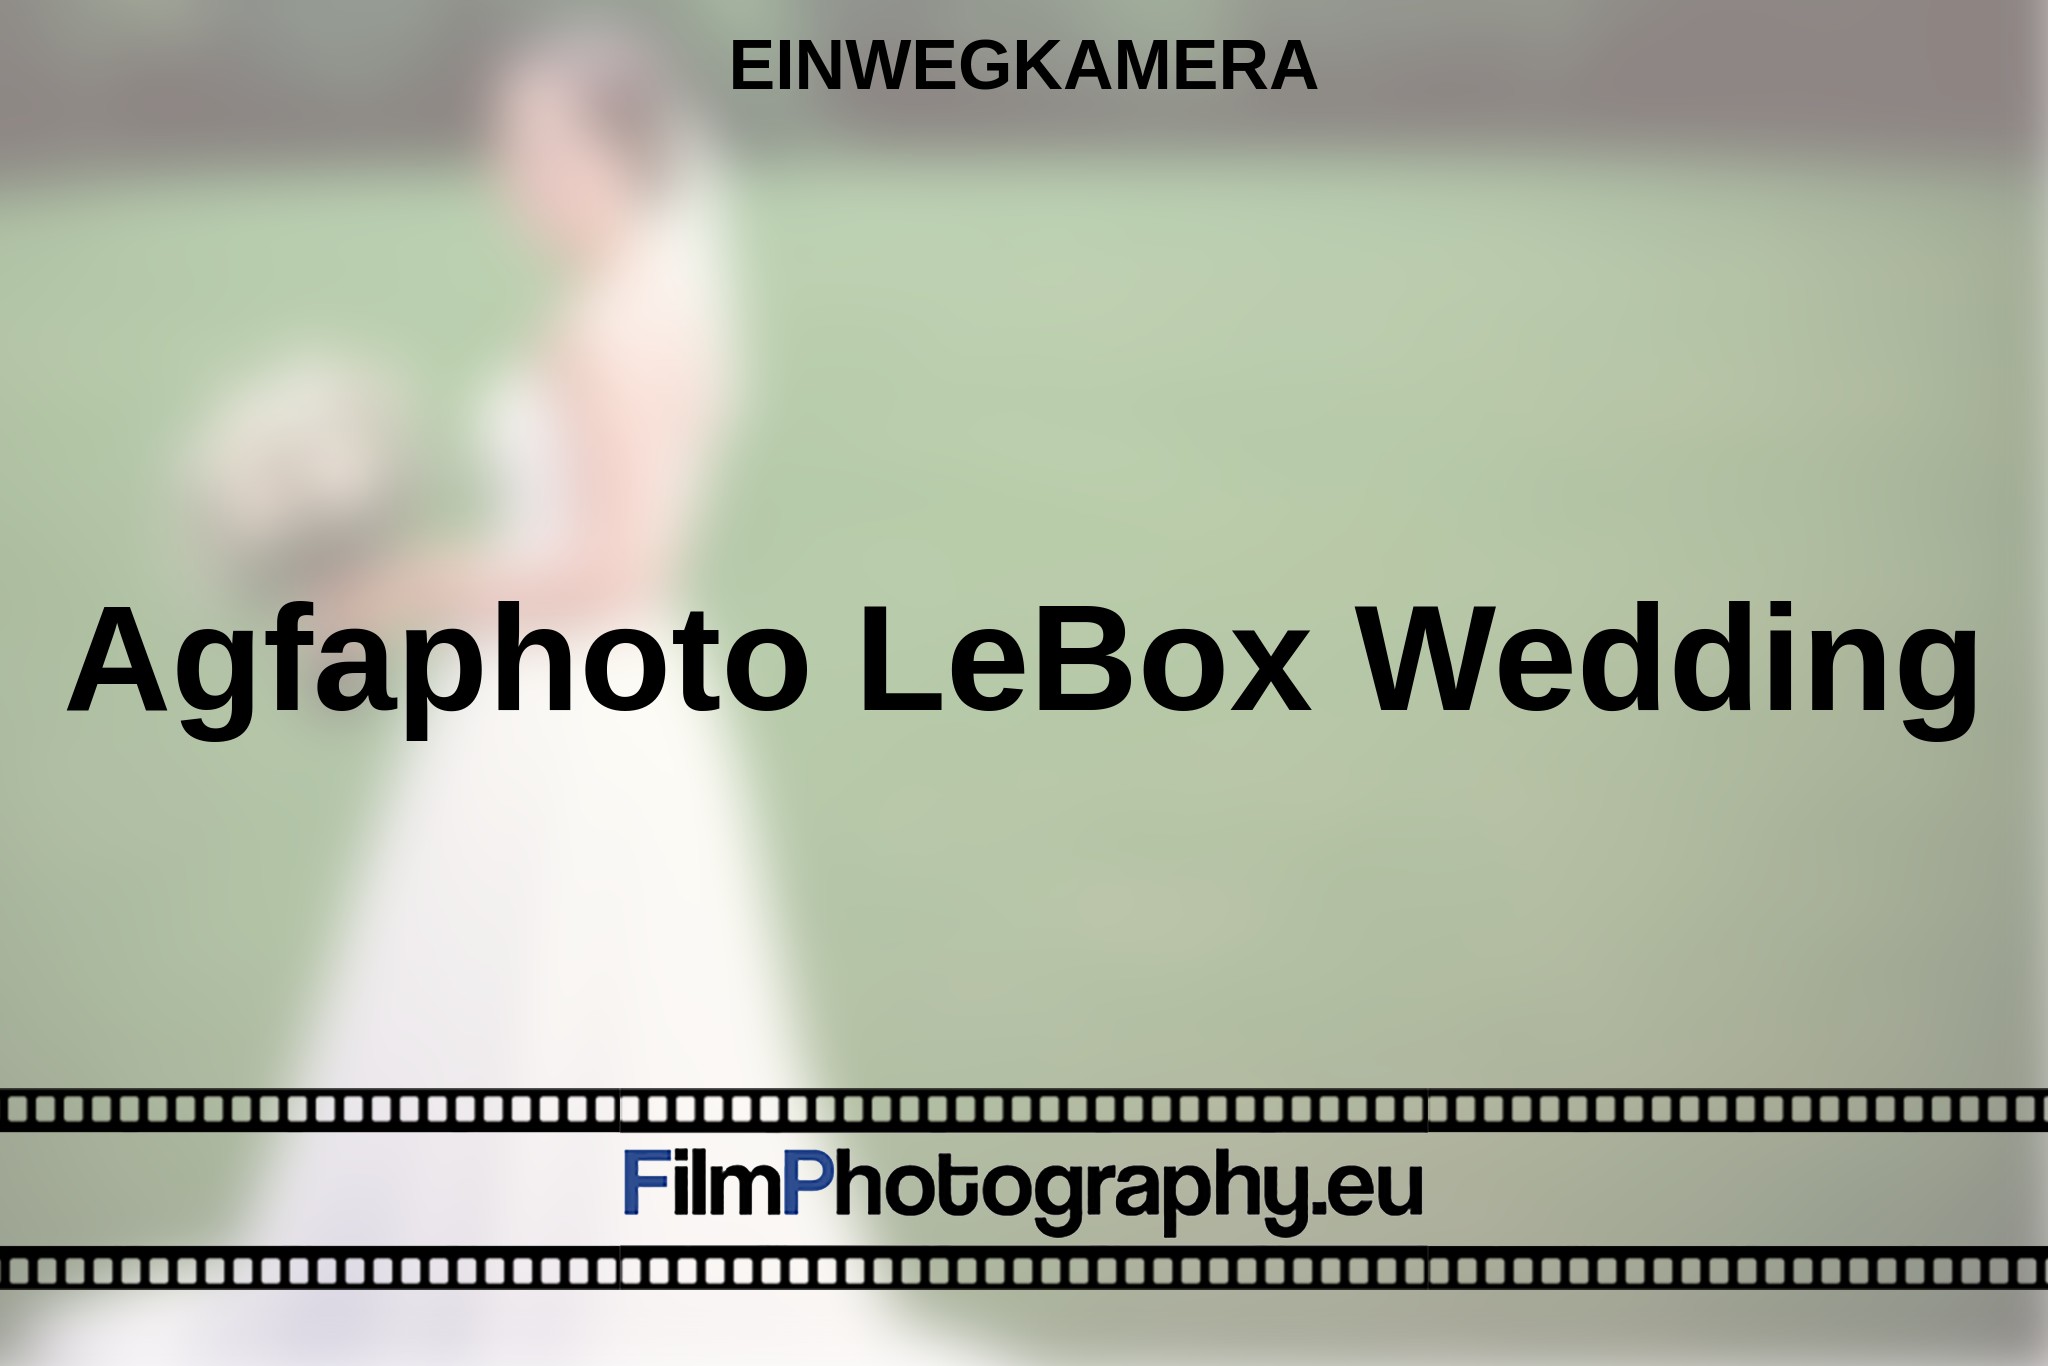 agfaphoto-lebox-wedding-einwegkamera-bnv.jpg